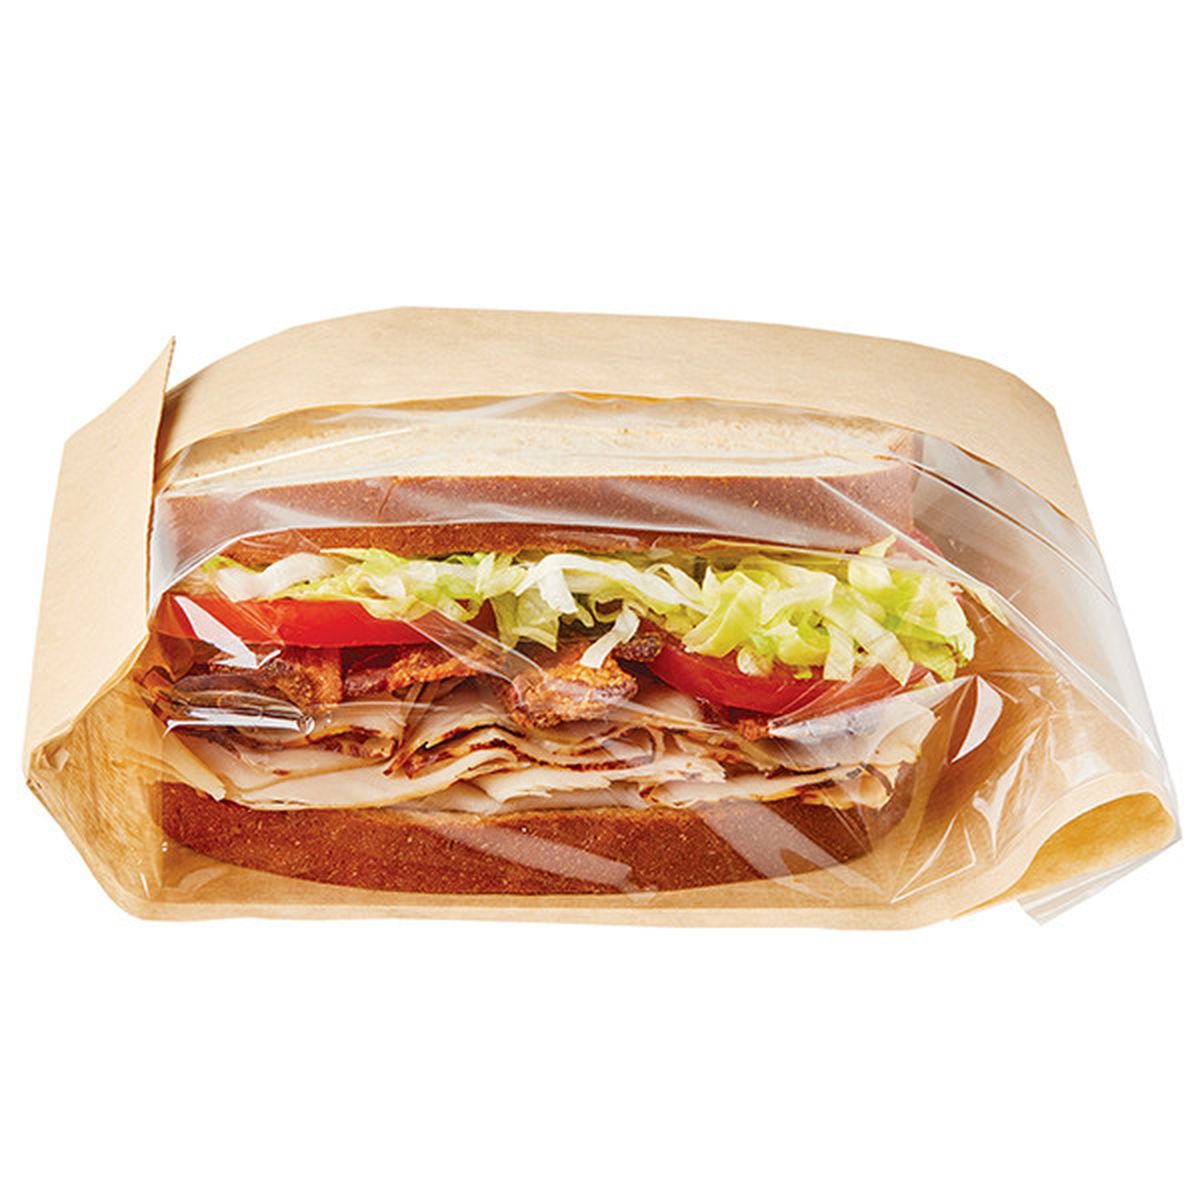 Calories in Wegmans Turkey BLT Sandwich